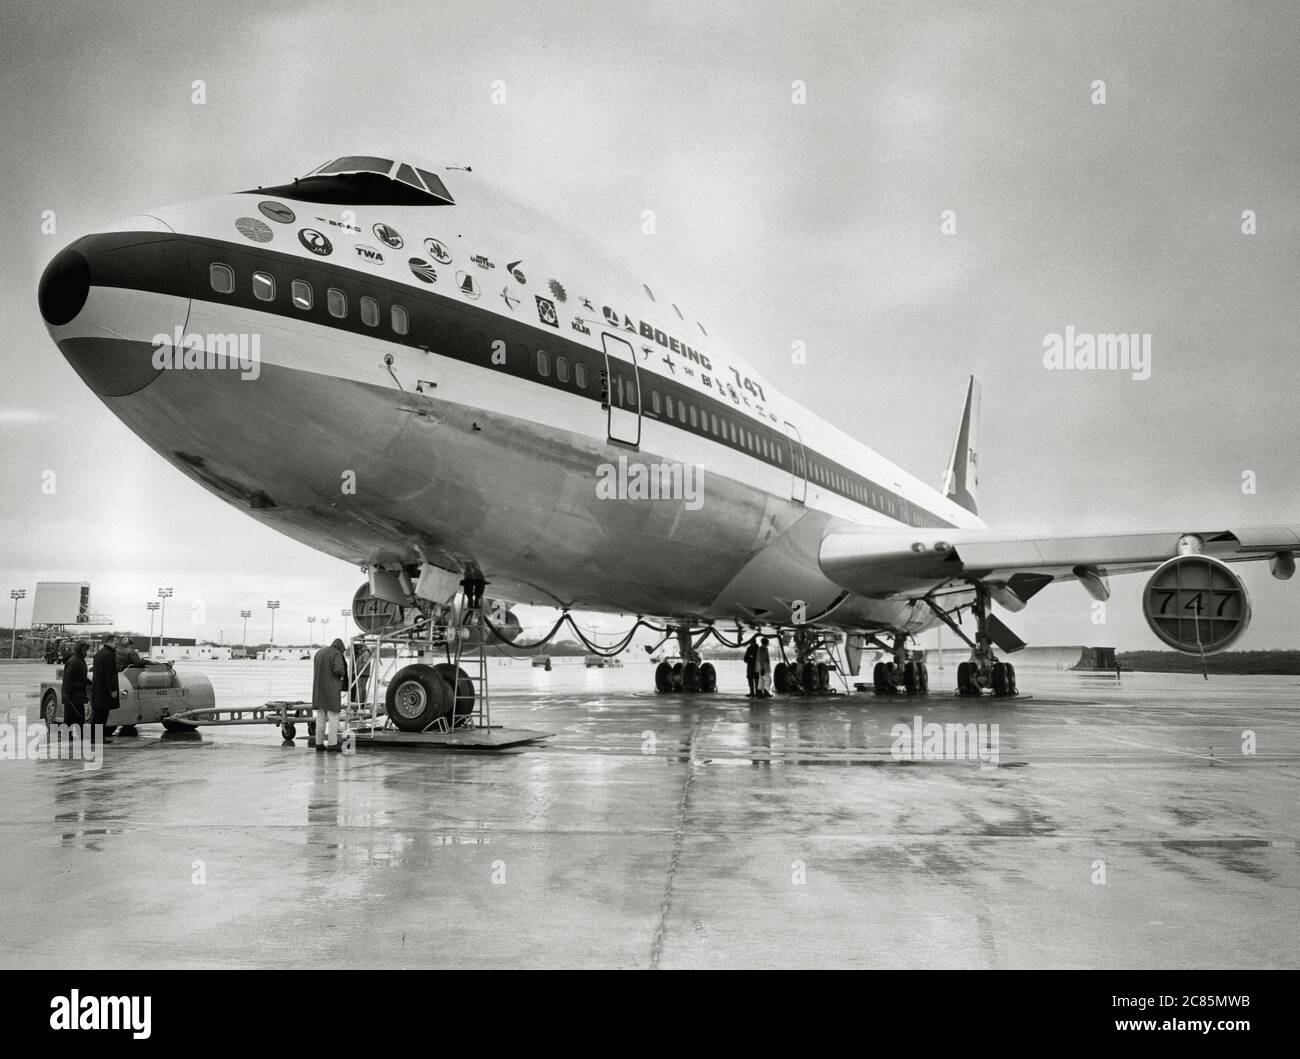 Die Boeing 747, das erste amerikanische Verkehrsjet- und Frachtflugzeug in  Serienfertigung, wurde im Februar 1969 erstmals in den USA eingesetzt  Stockfotografie - Alamy